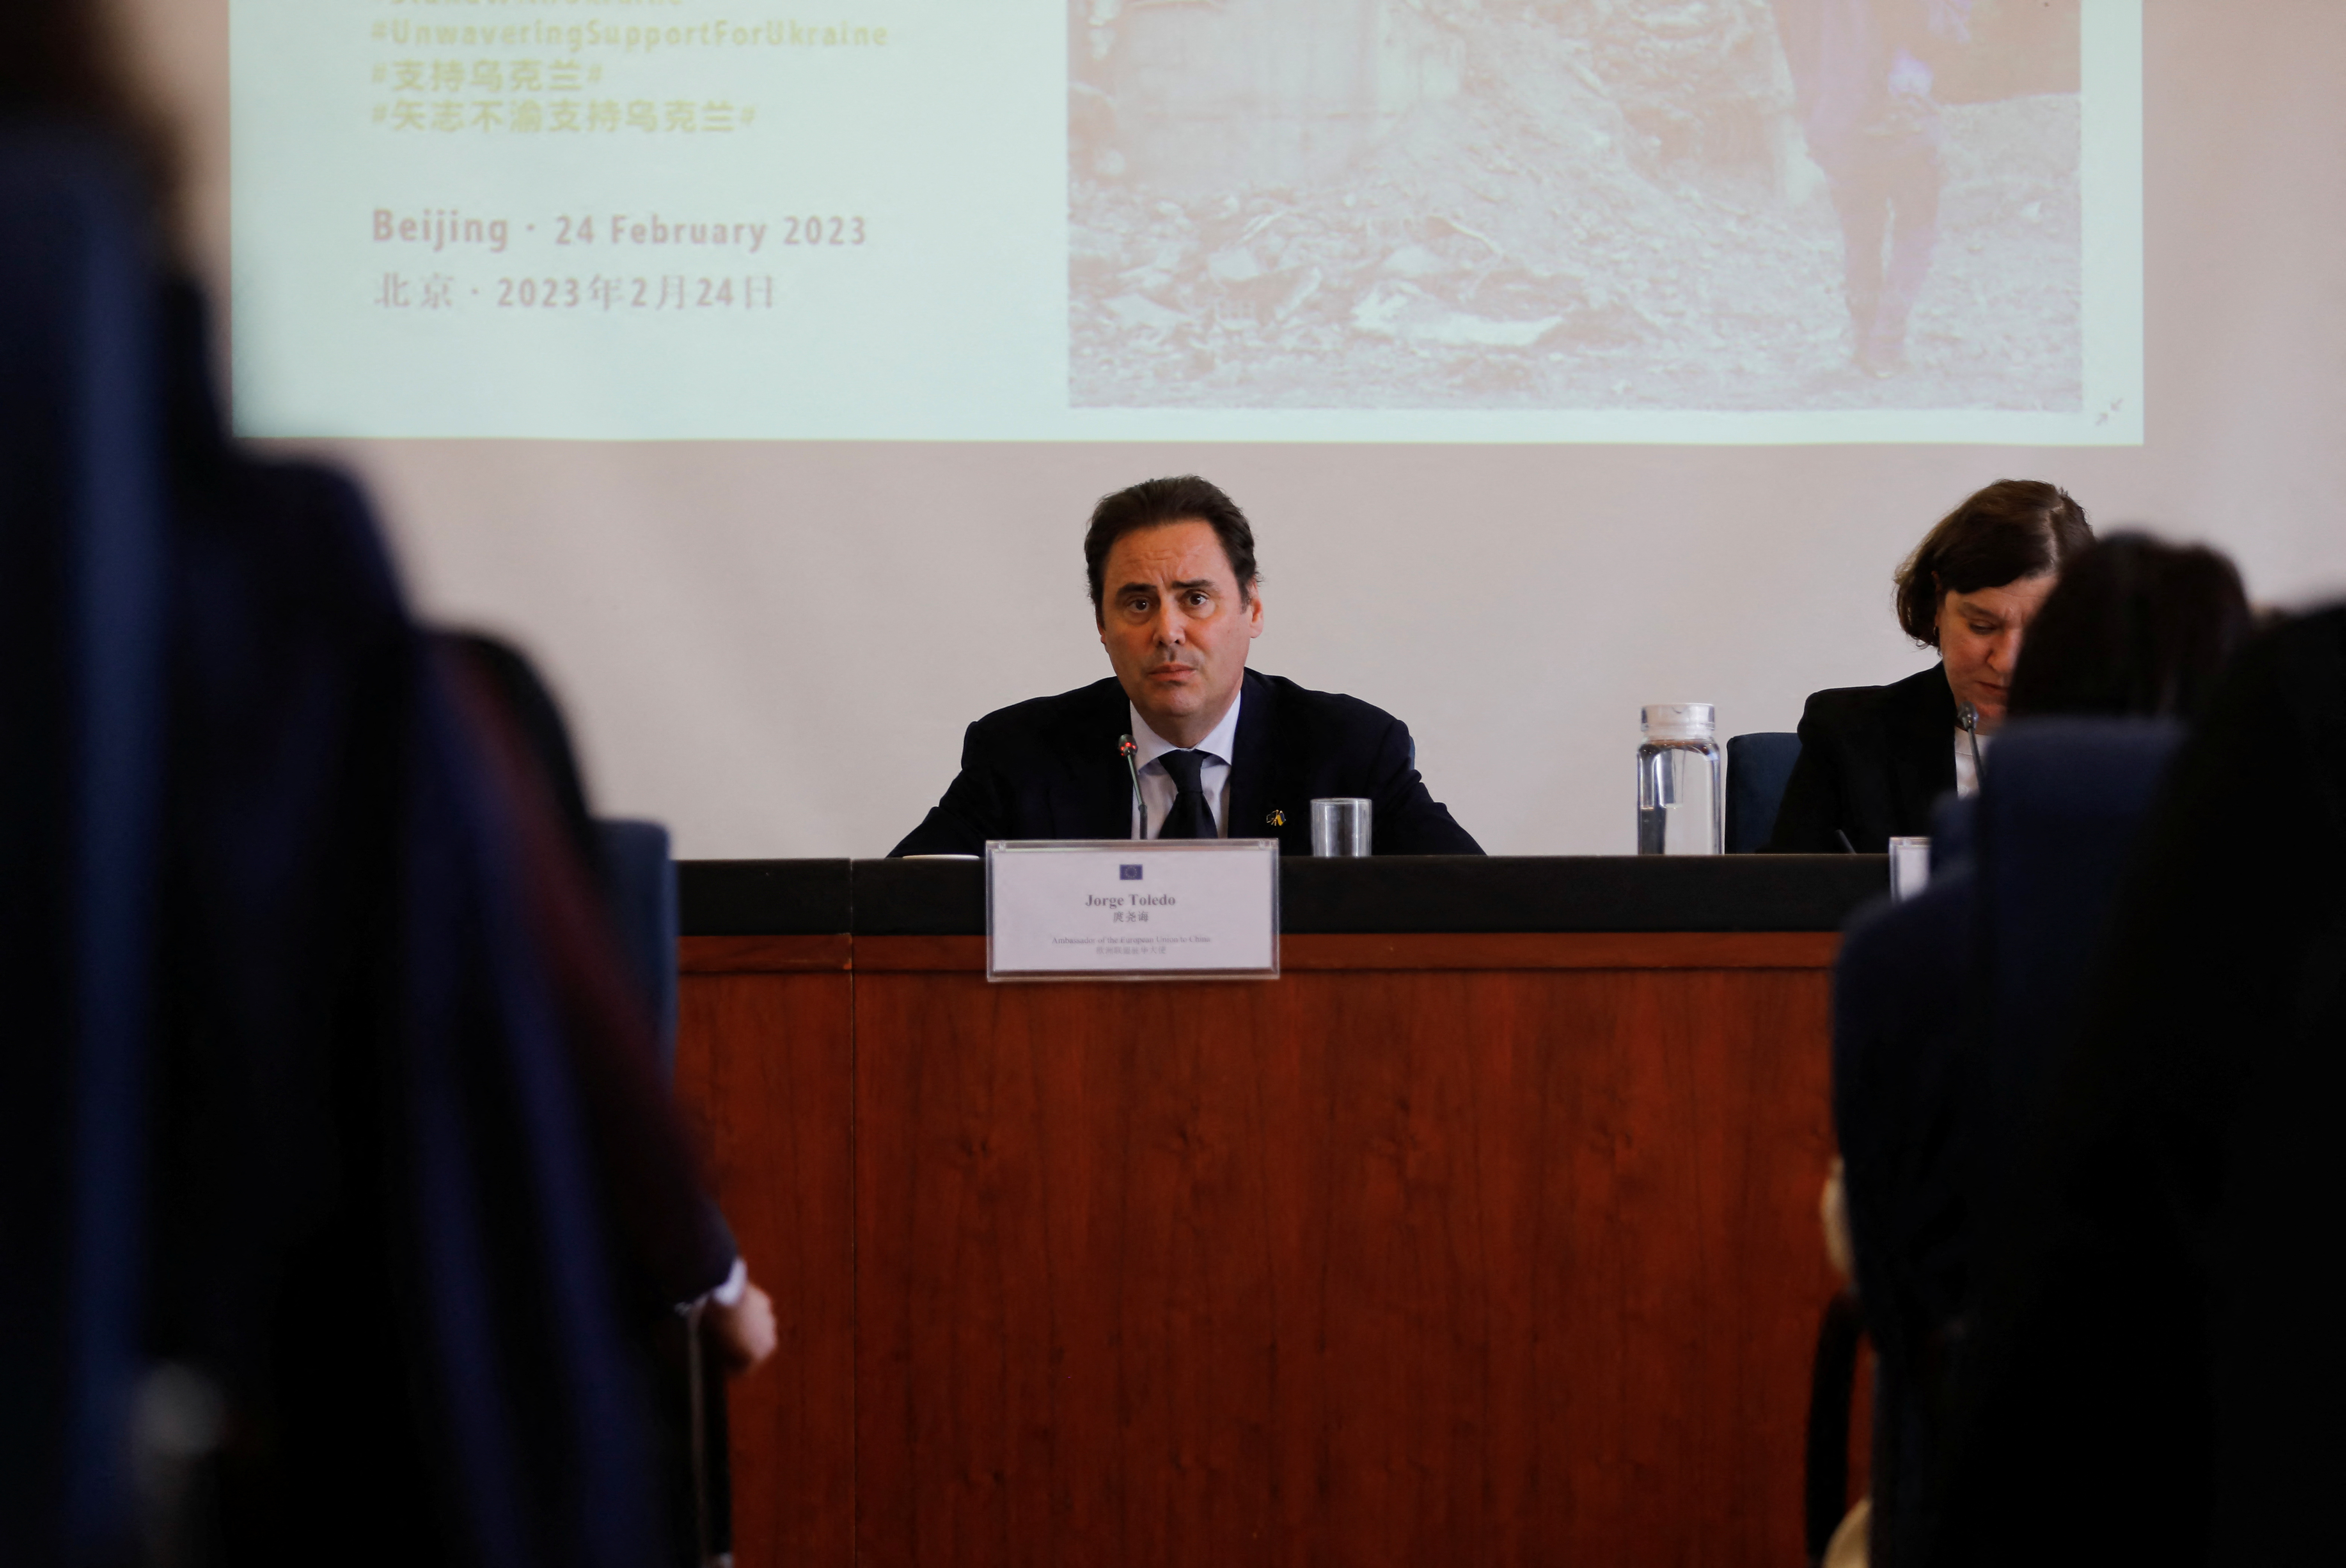 Jorge Toledo, embajador de la Unión Europea en China, habló en conferencia de prensa al cumplirse un año de la invasión rusa a Ucrania (REUTERS/Tingshu Wang)